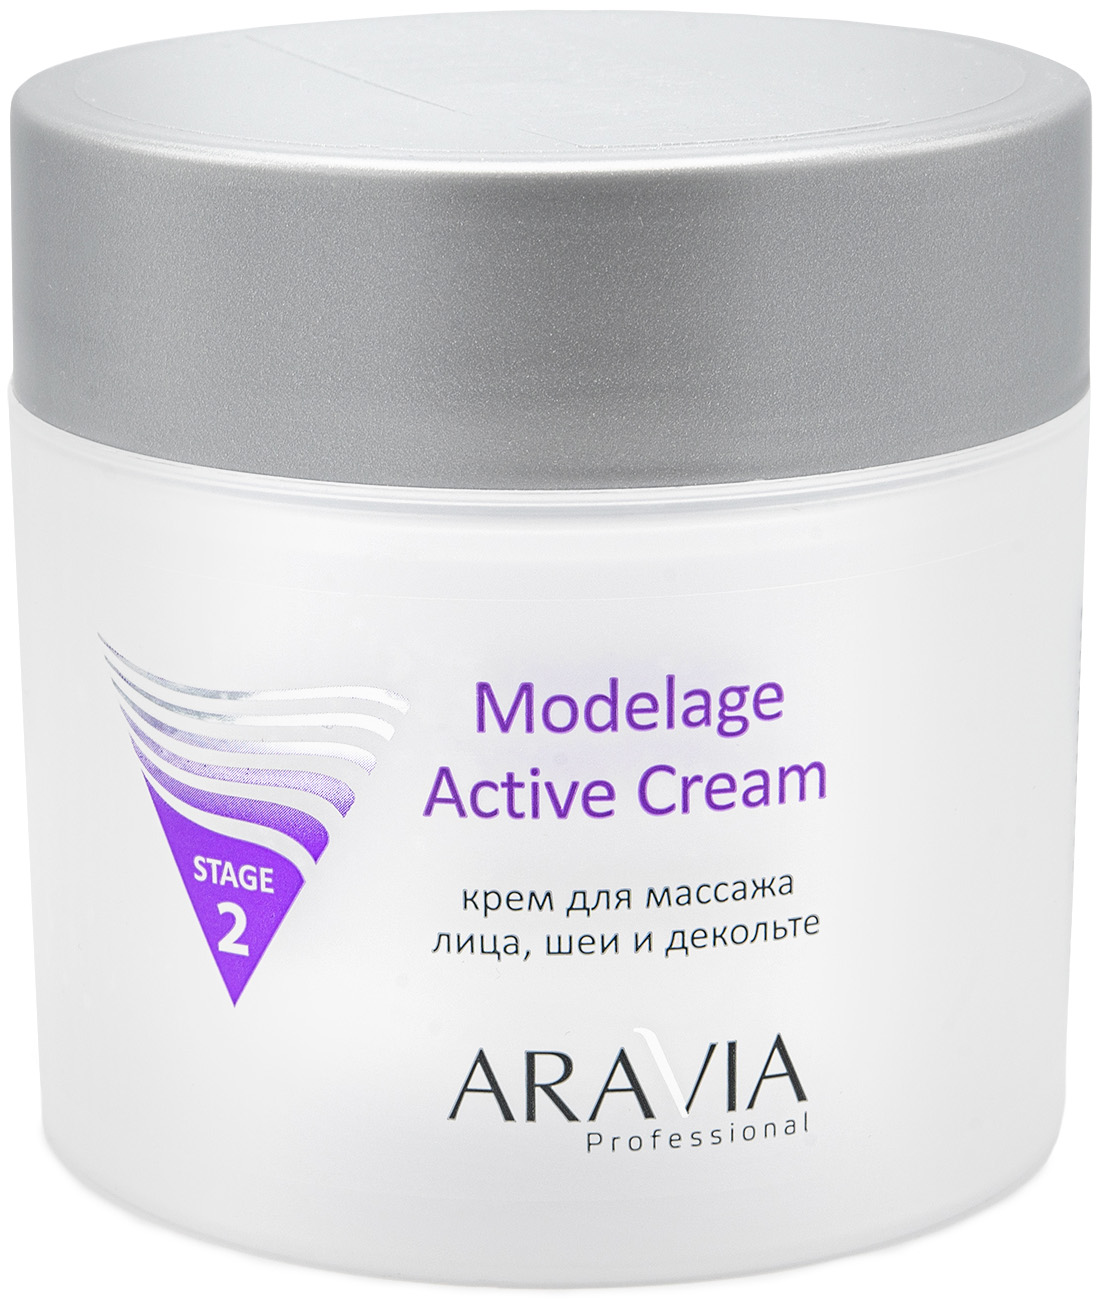 Купить Aravia Professional Крем для массажа Modelage Active Cream, 300 мл (Aravia Professional, Уход за лицом), Россия